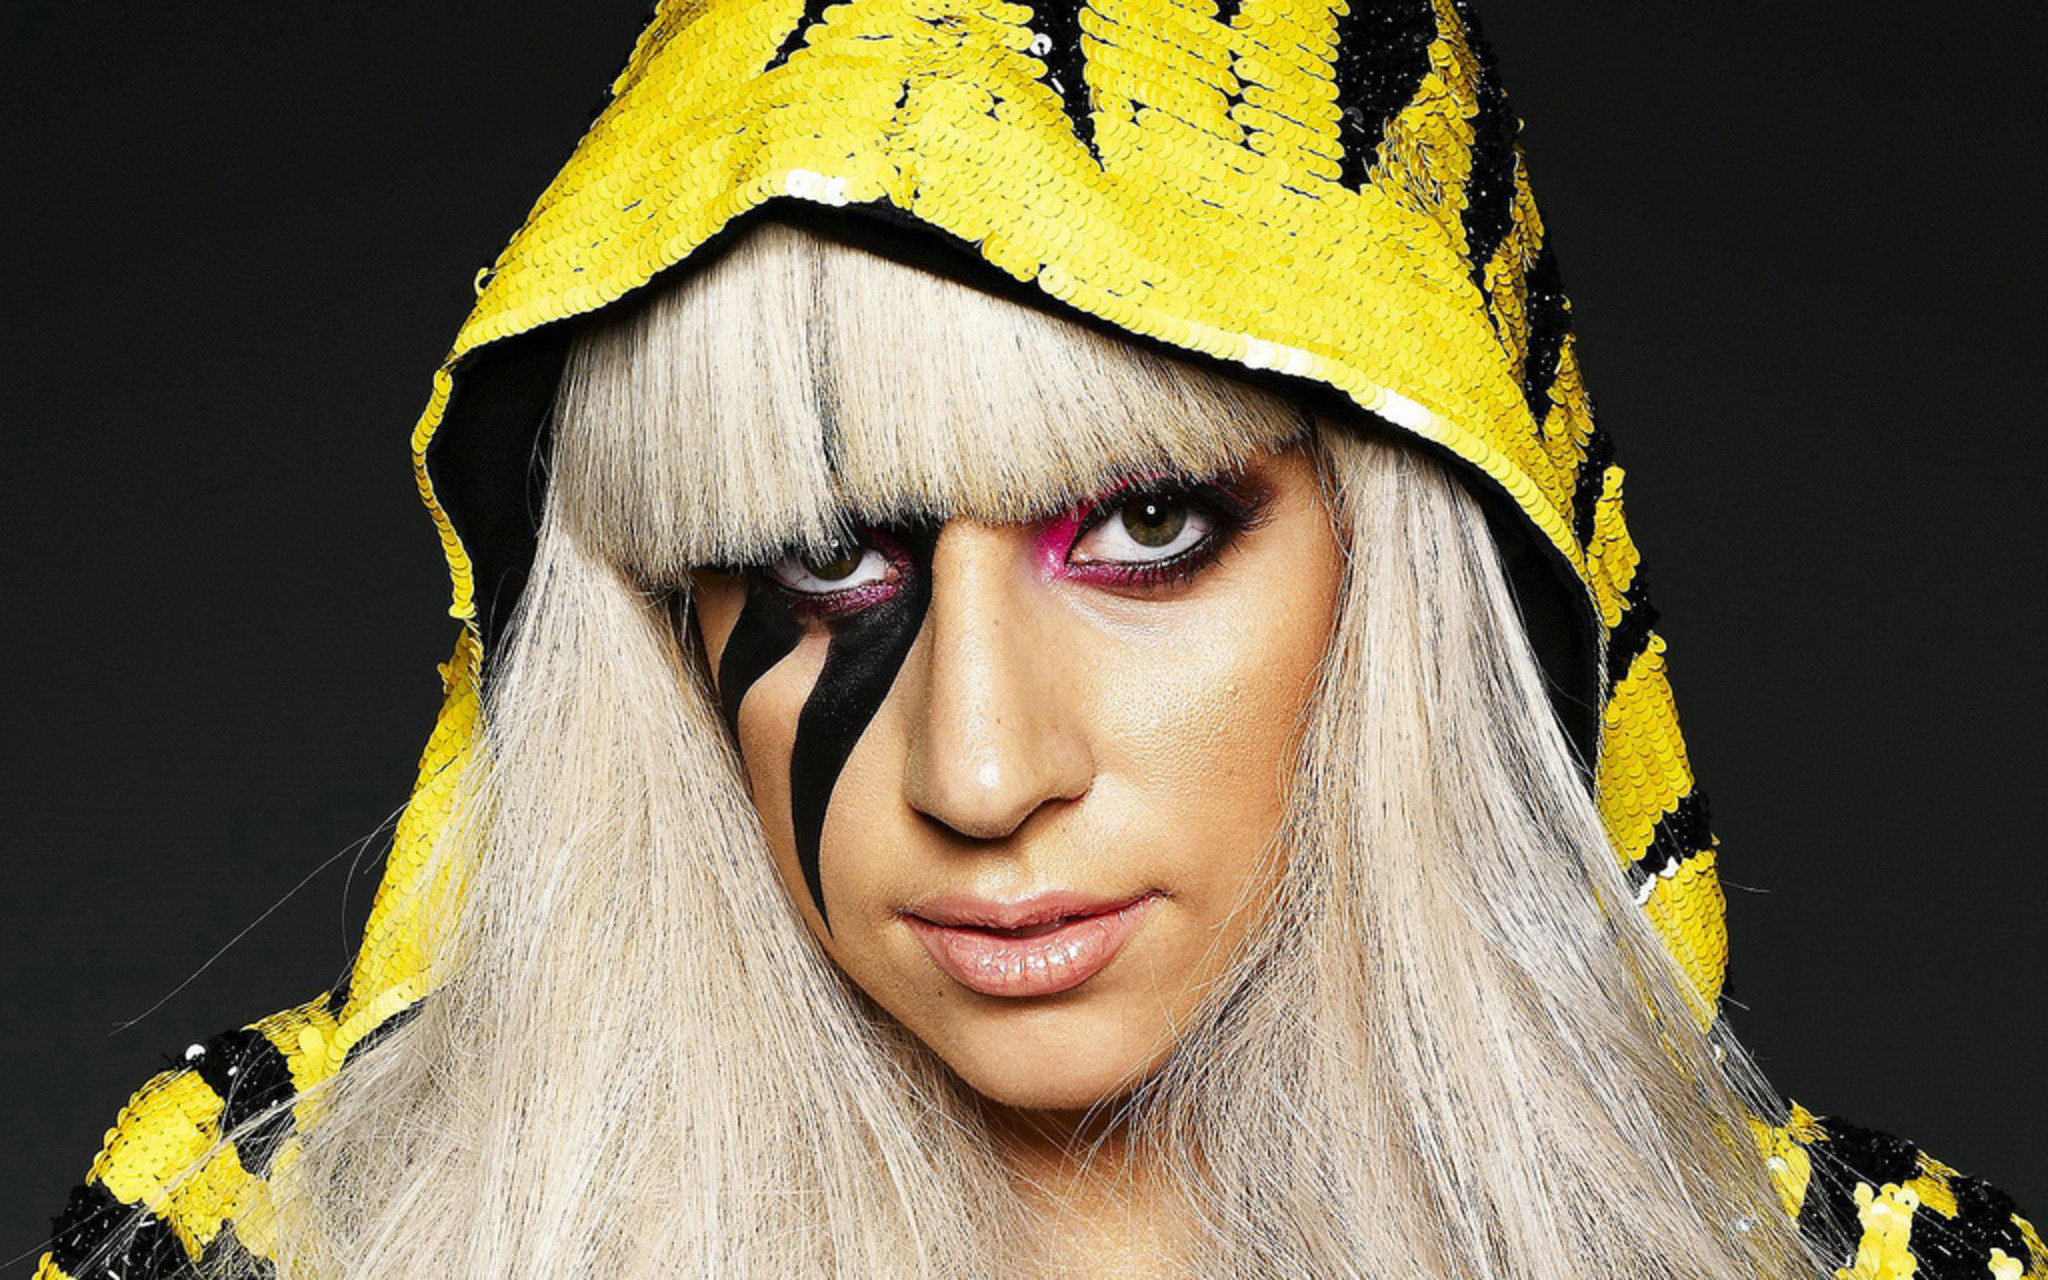 Trấn Thành gây xôn xao khi nhận xét Lady Gaga cố tình mặc đồ quái dị để nổi tiếng